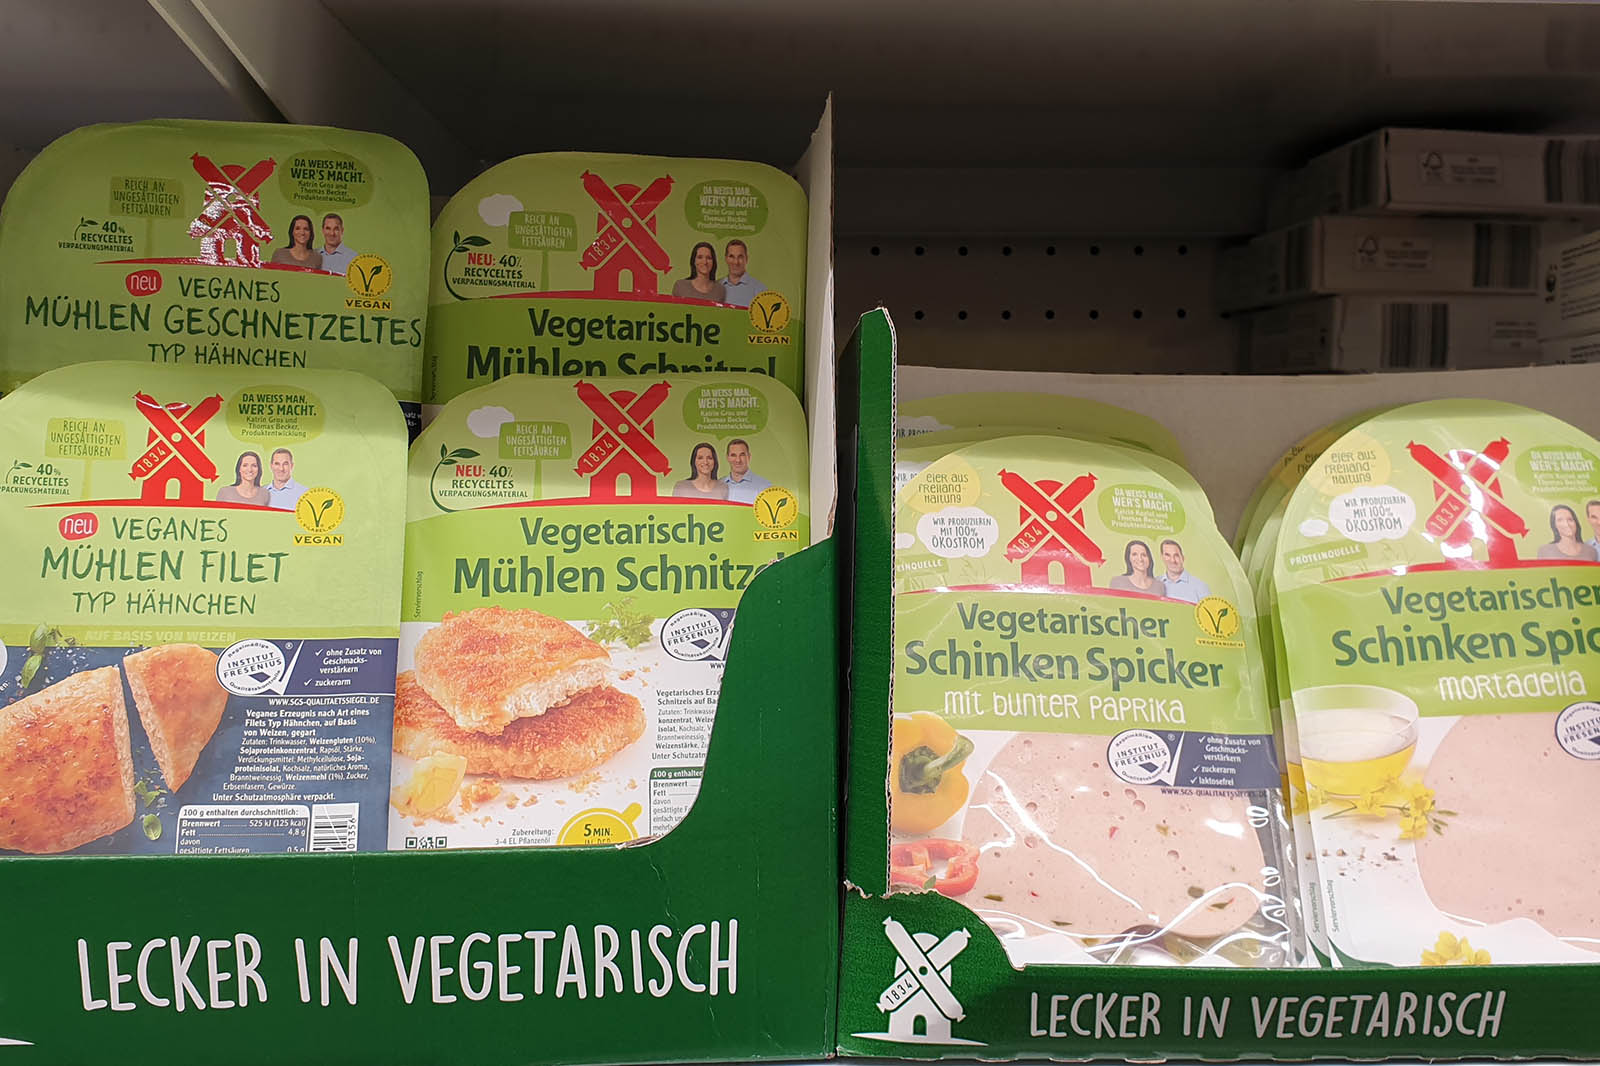 Rügenwalder Mühle: Wird der Fleischproduzent komplett vegan? bald